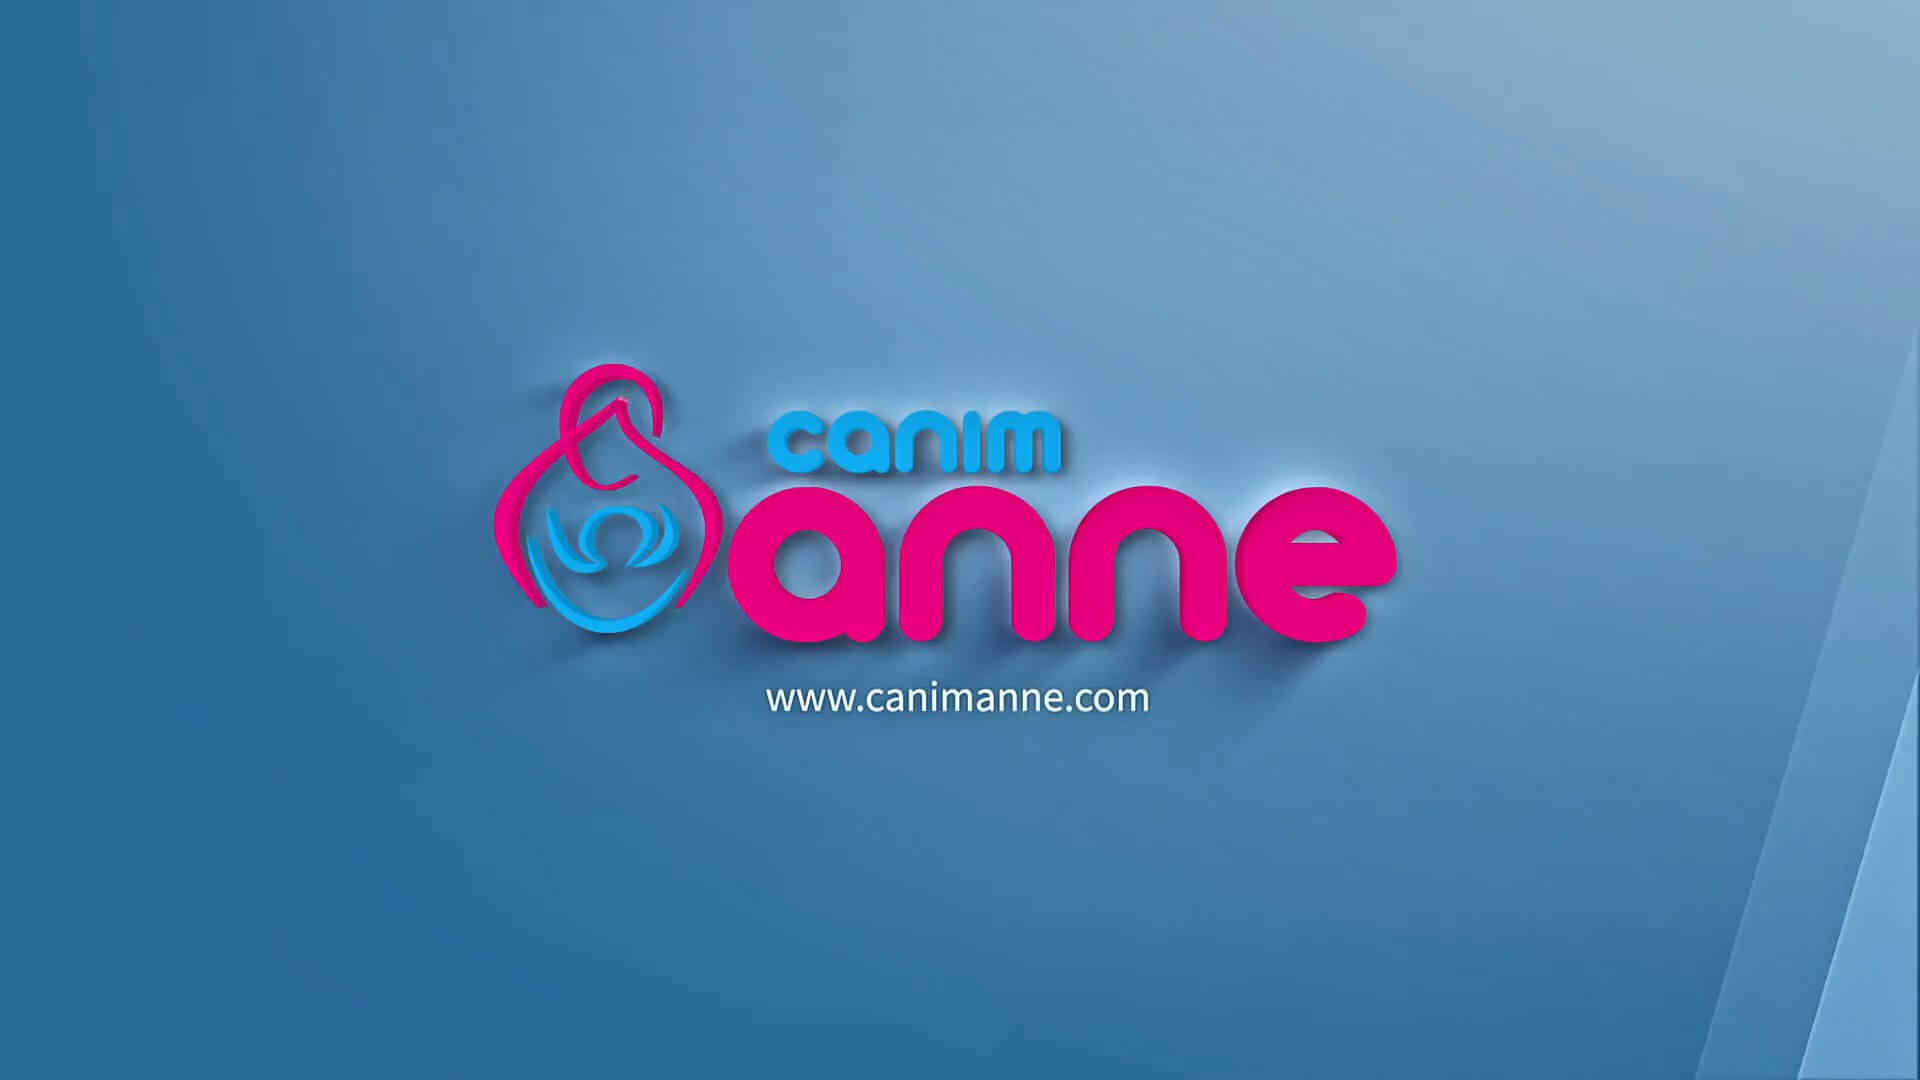 Canımanne7 - Canimanne.com Animasyon Filmi